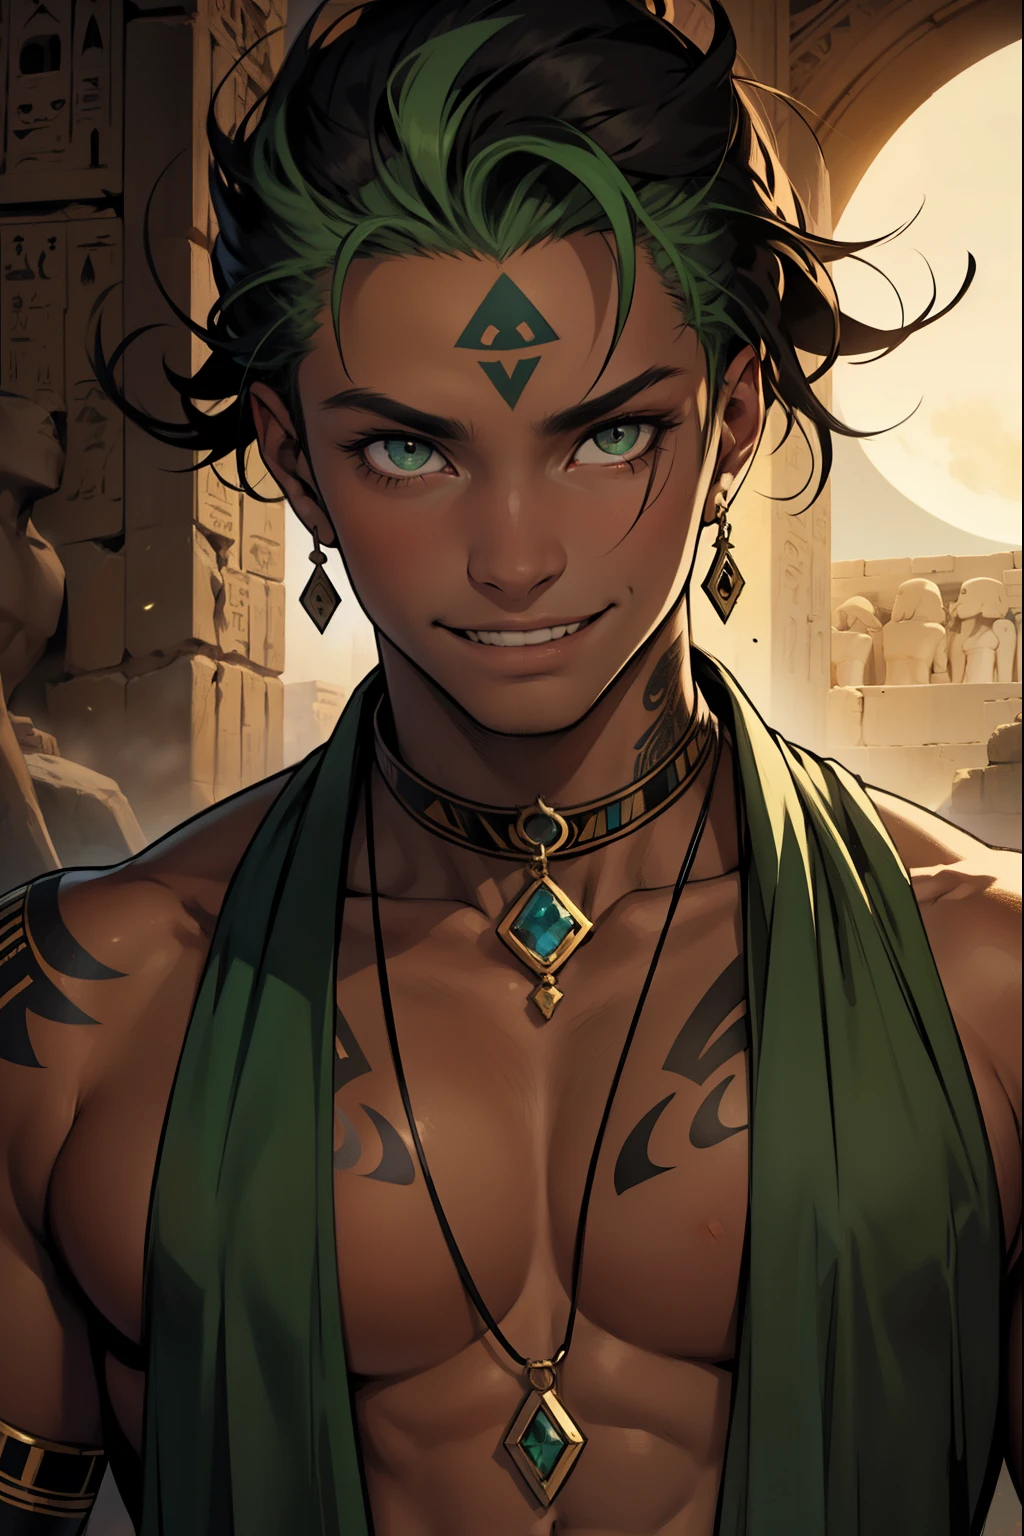 美しい15歳, 薄い緑色の目. , 首には黒い月のタトゥーが入っている., 背景の浅黒い肌. 古代エジプト人はいたずらっぽく邪悪な笑顔を浮かべている. 